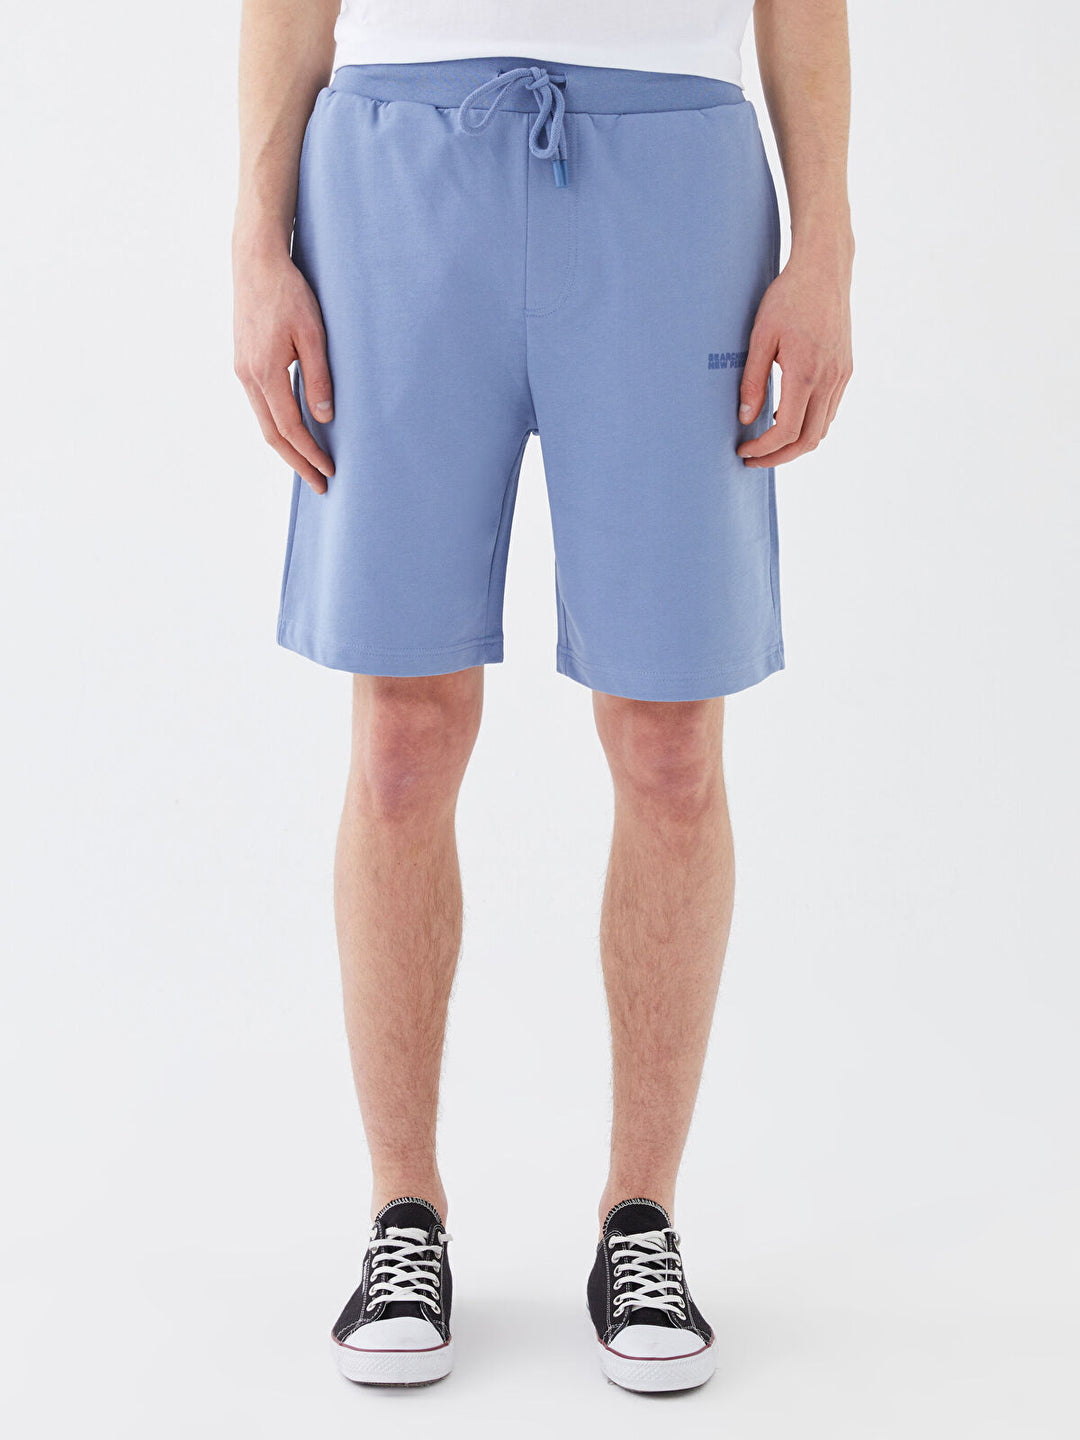 Standard Pattern Printed Men Shorts